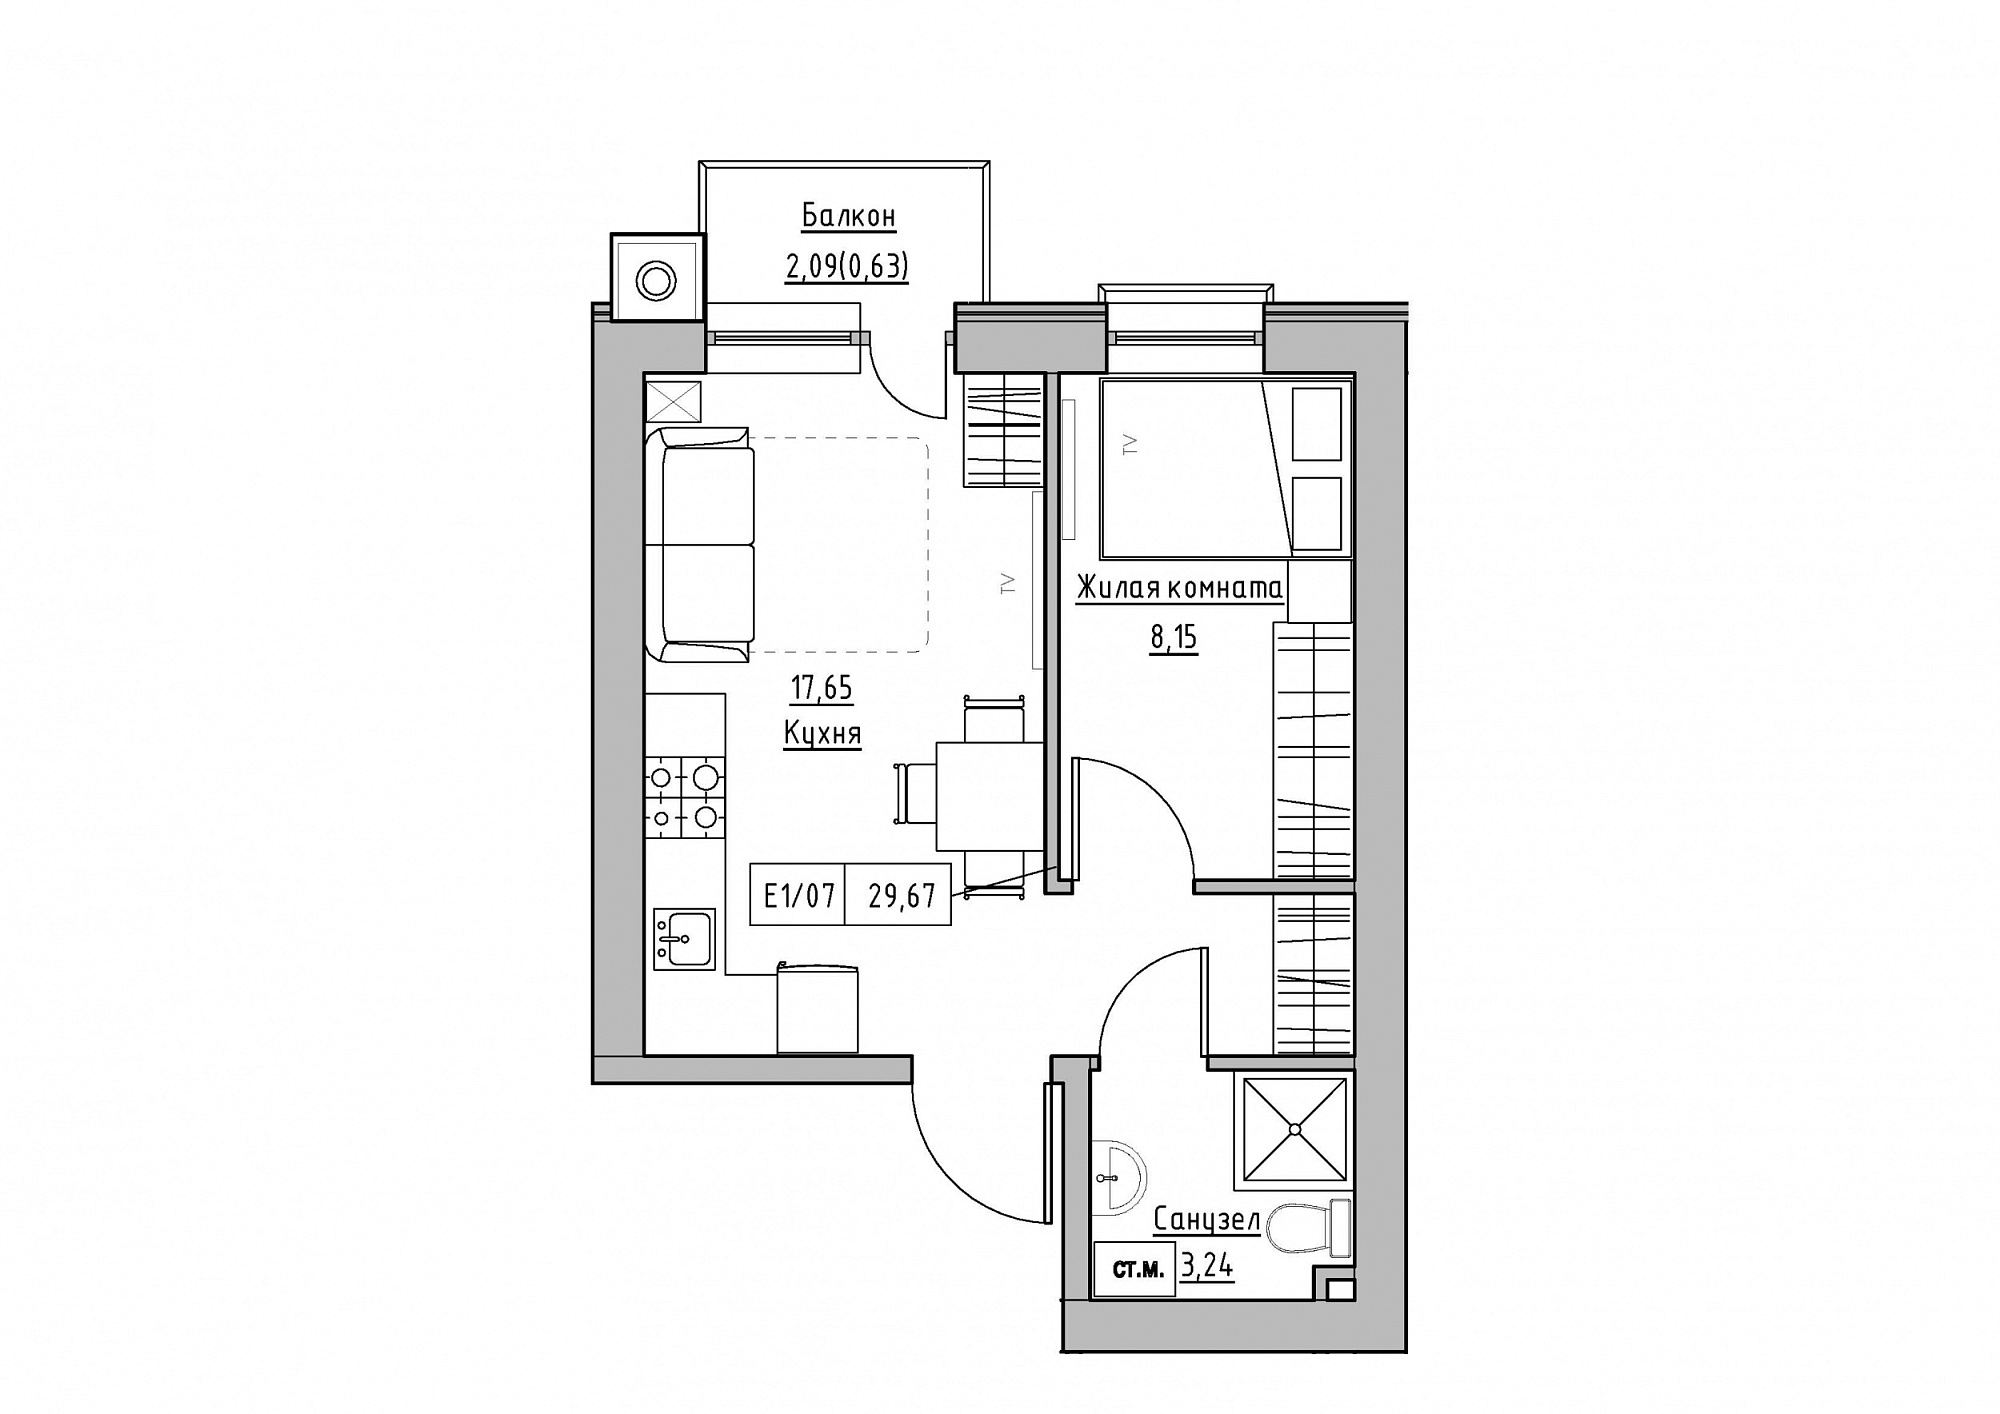 Планування 1-к квартира площею 29.67м2, KS-012-05/0003.